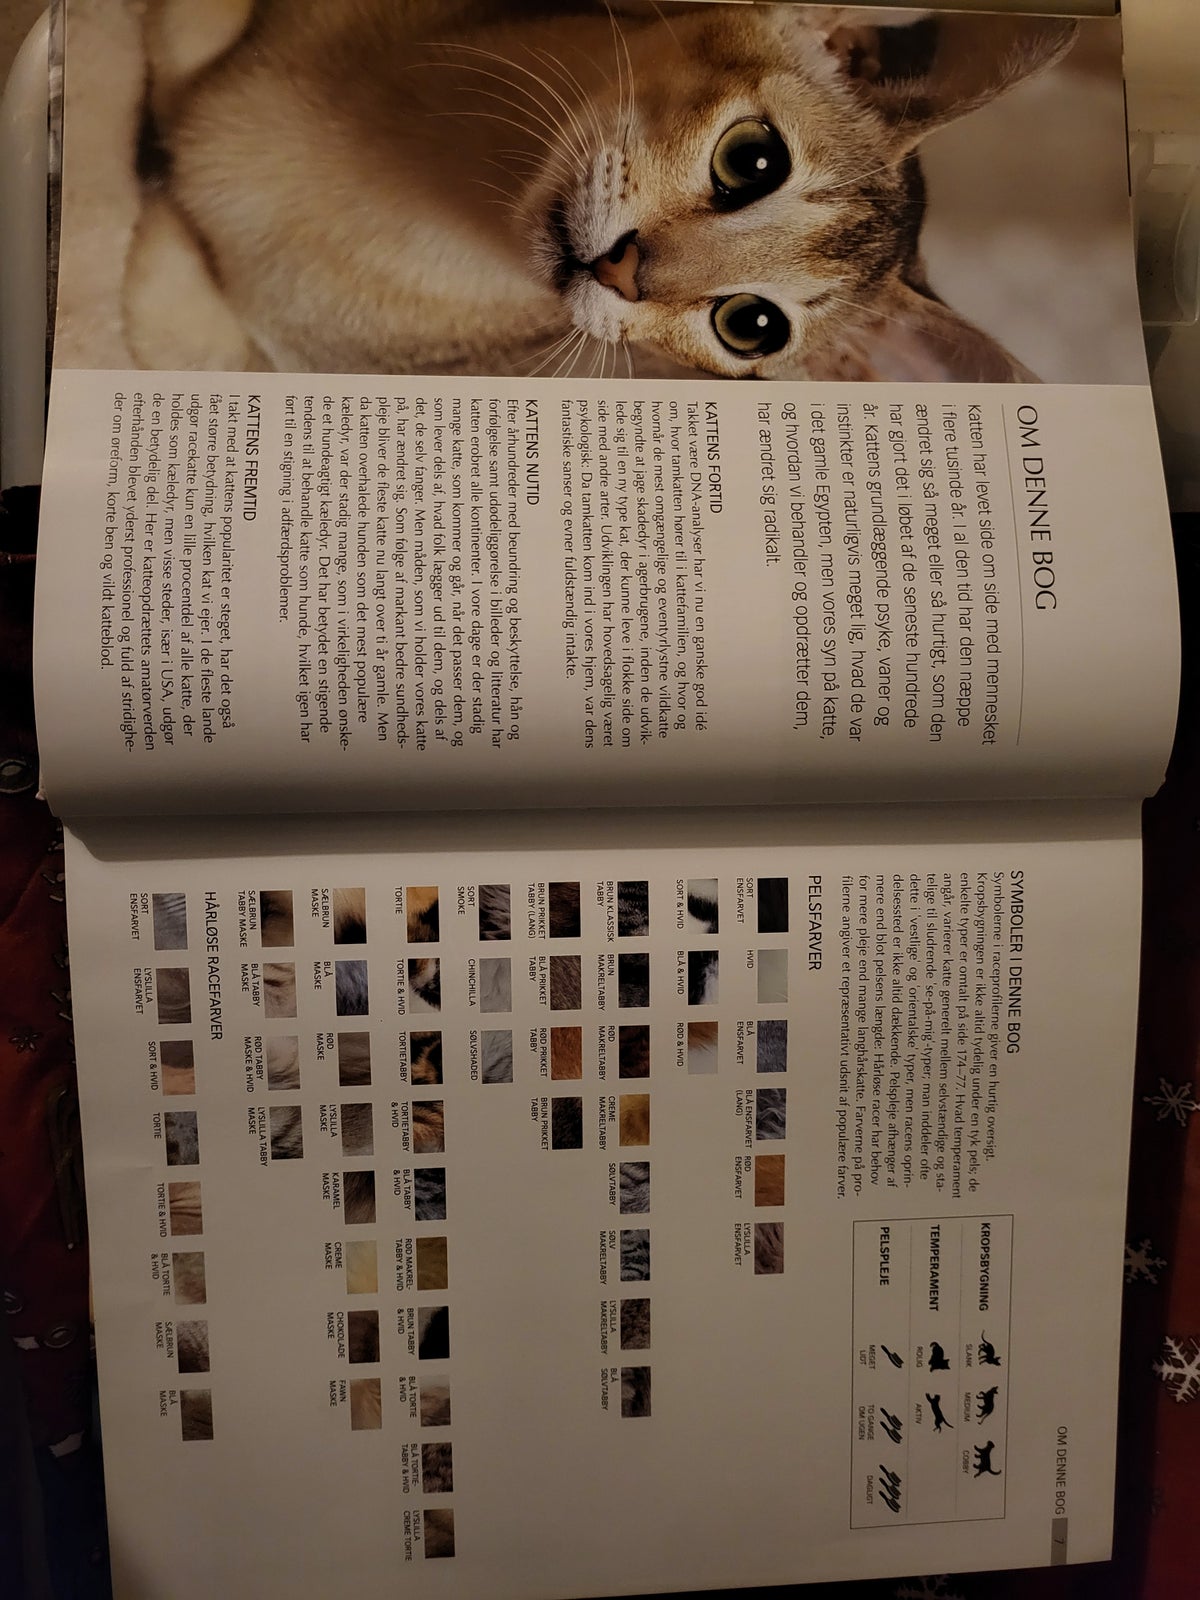 Andet, Katte bogen